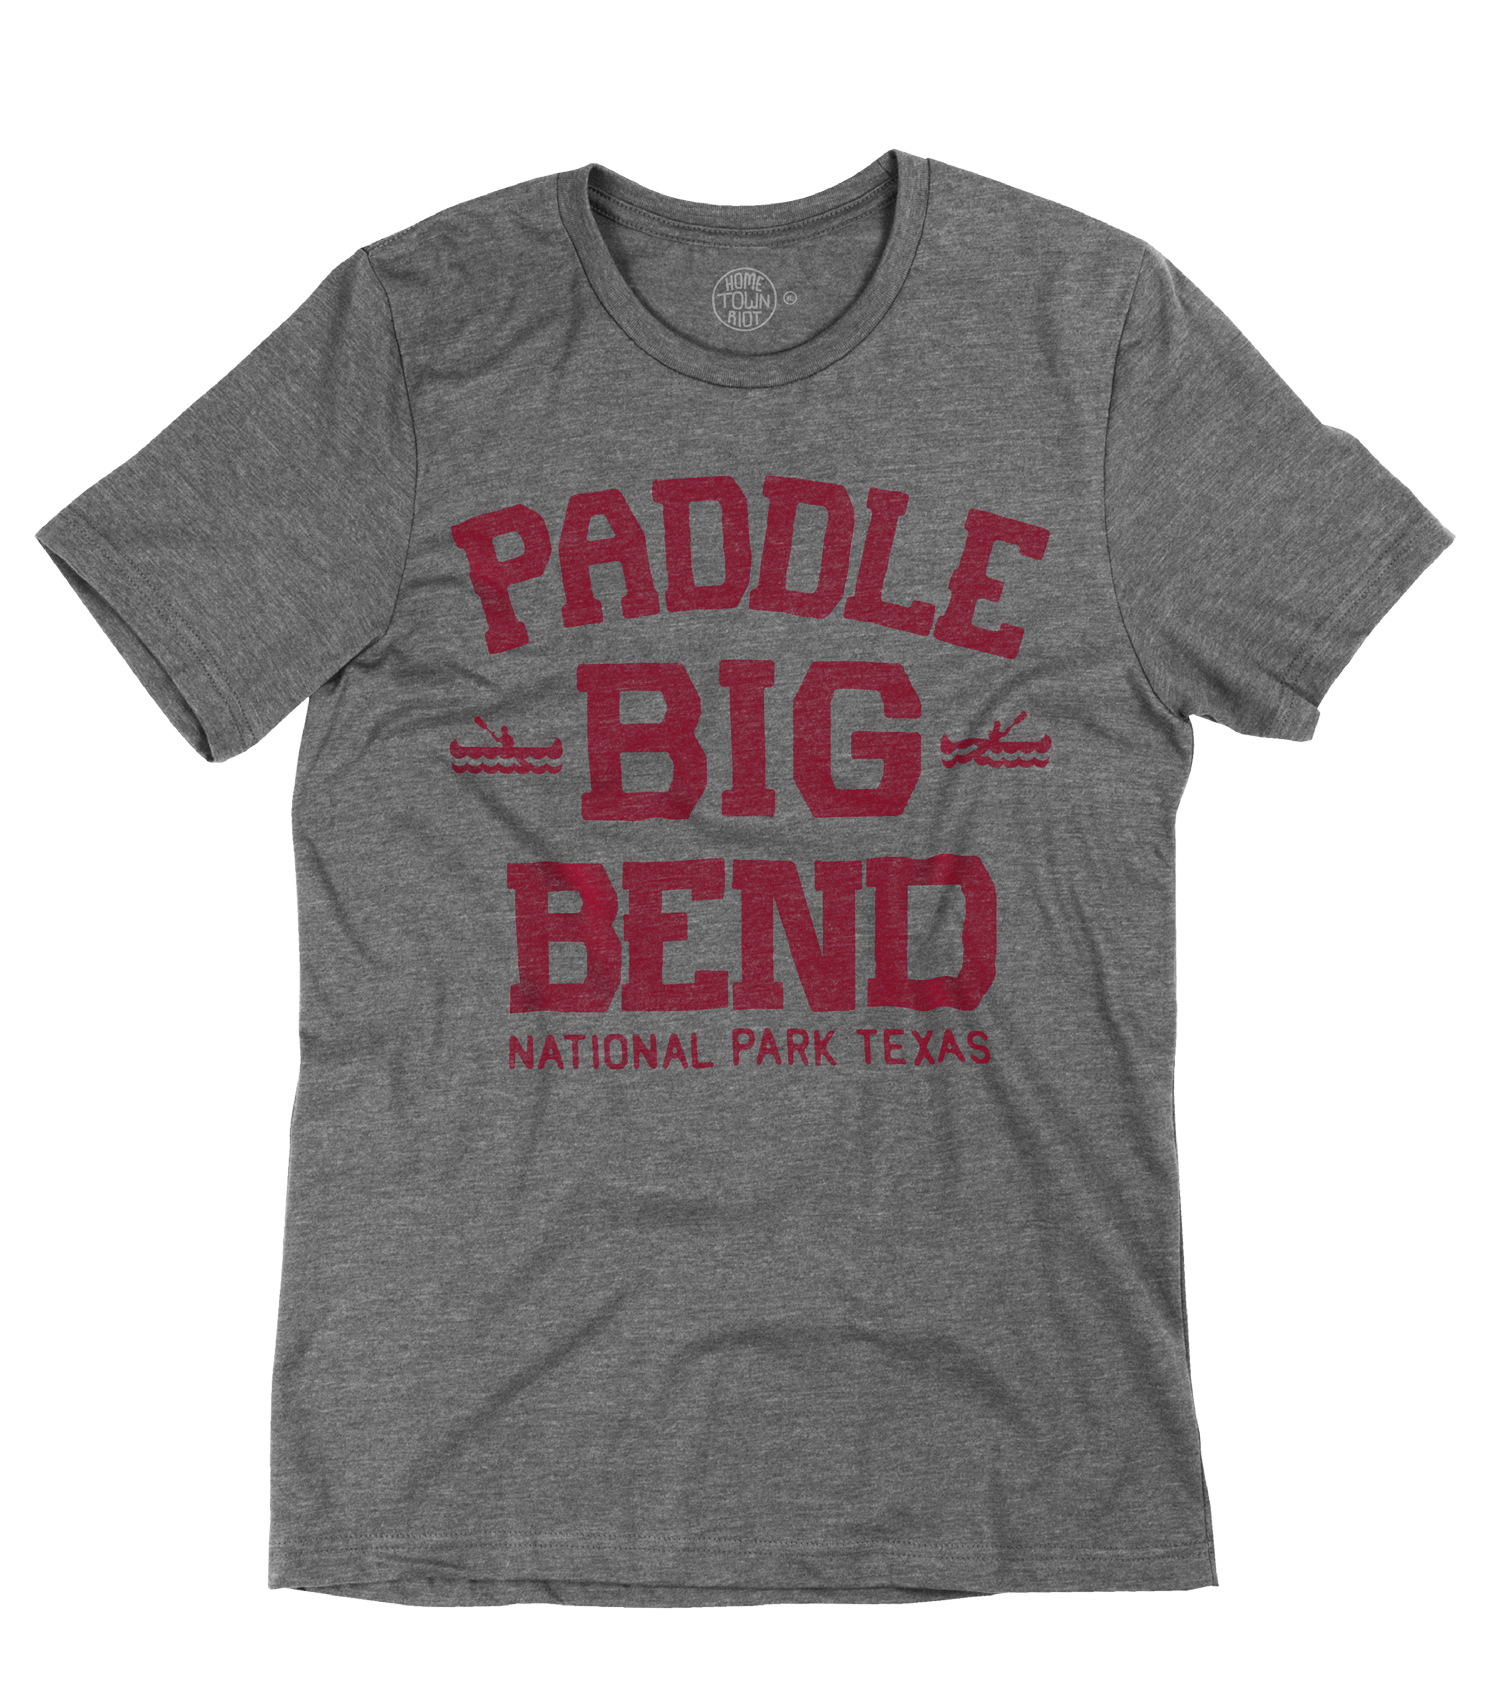 Paddle Big Bend National Park Shirt - HomeTownRiot